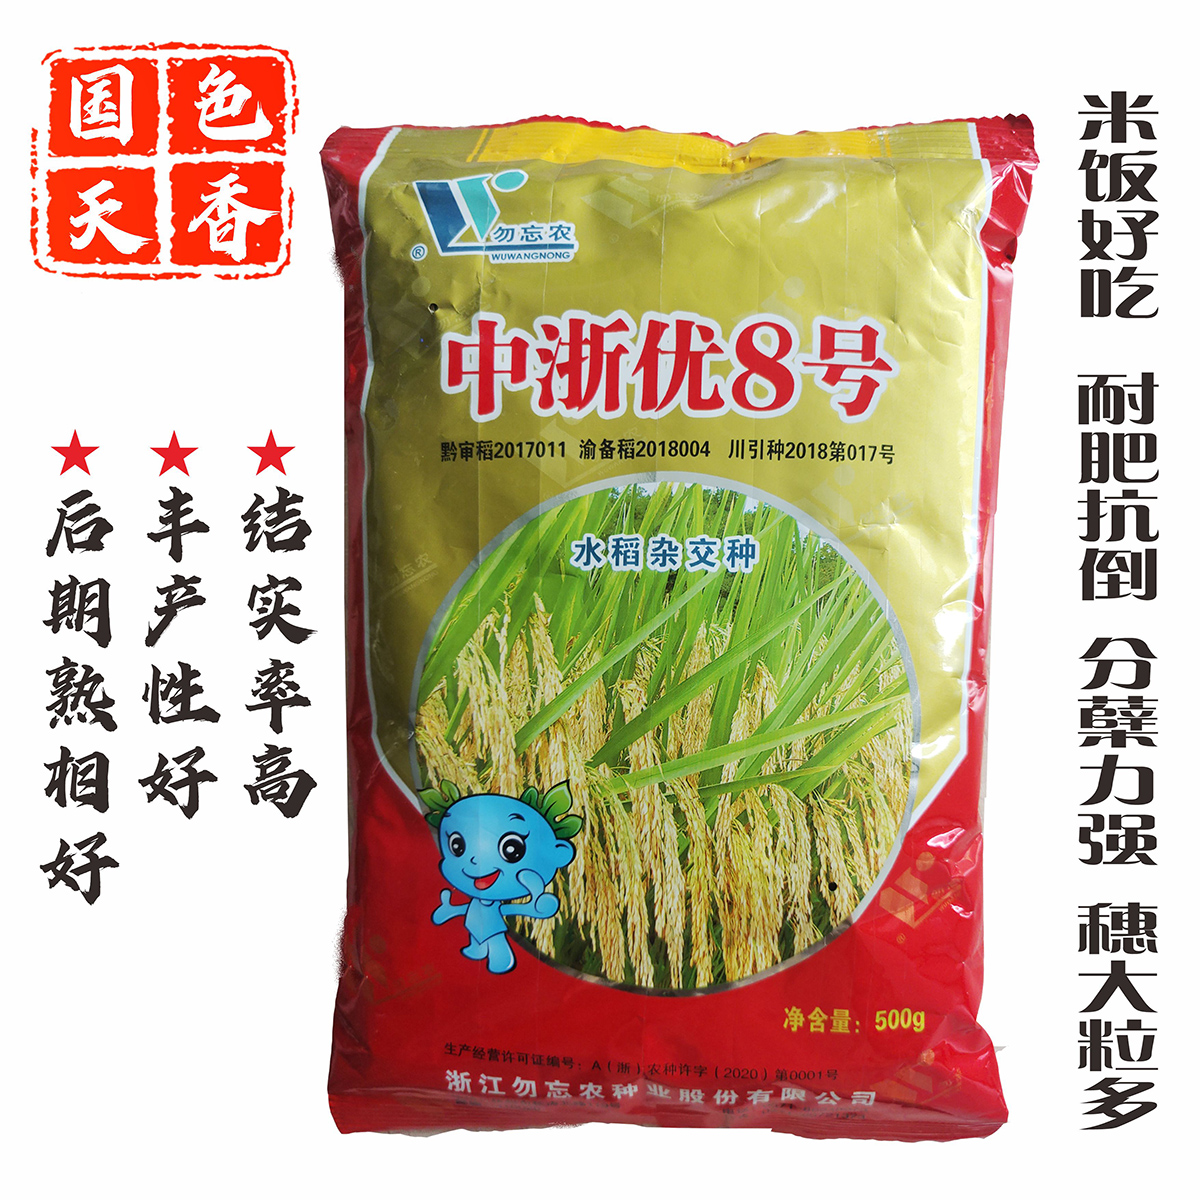 成都中浙优8号  香稻优质长粒米抗病抗倒高产杂交水稻种子 稻谷谷